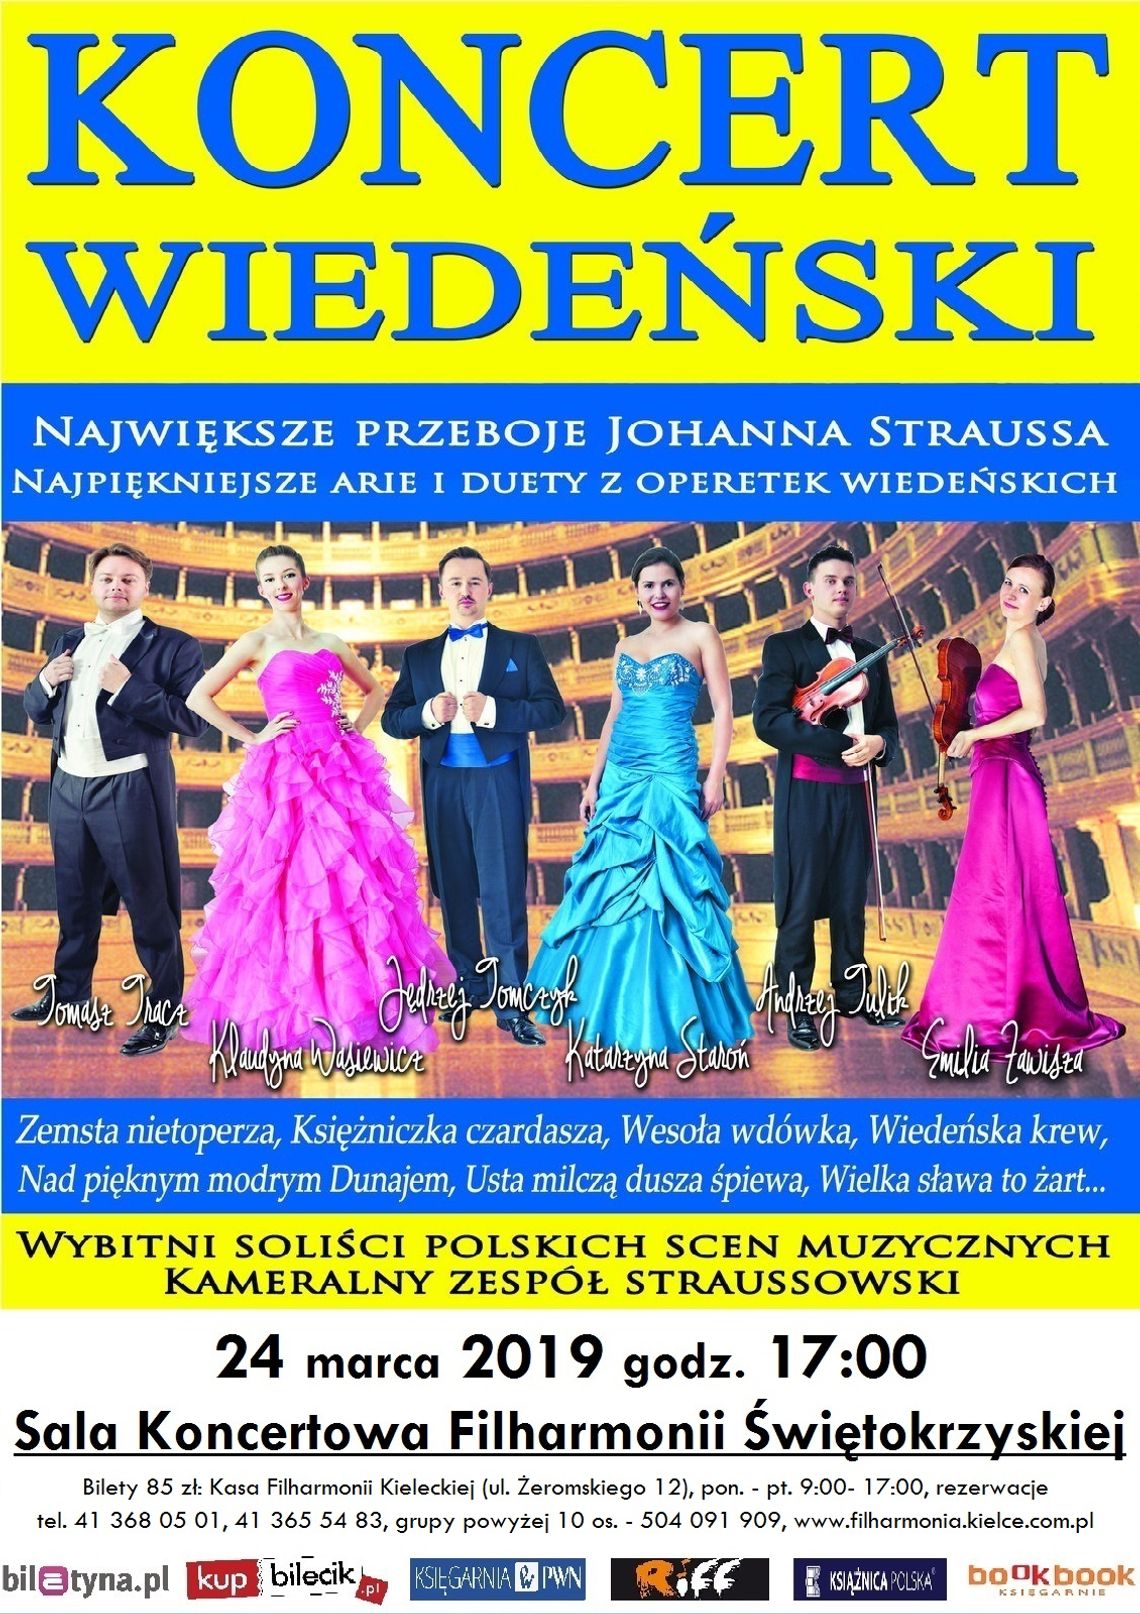 Koncert Wiedeński w Filharmonii Świętokrzyskiej